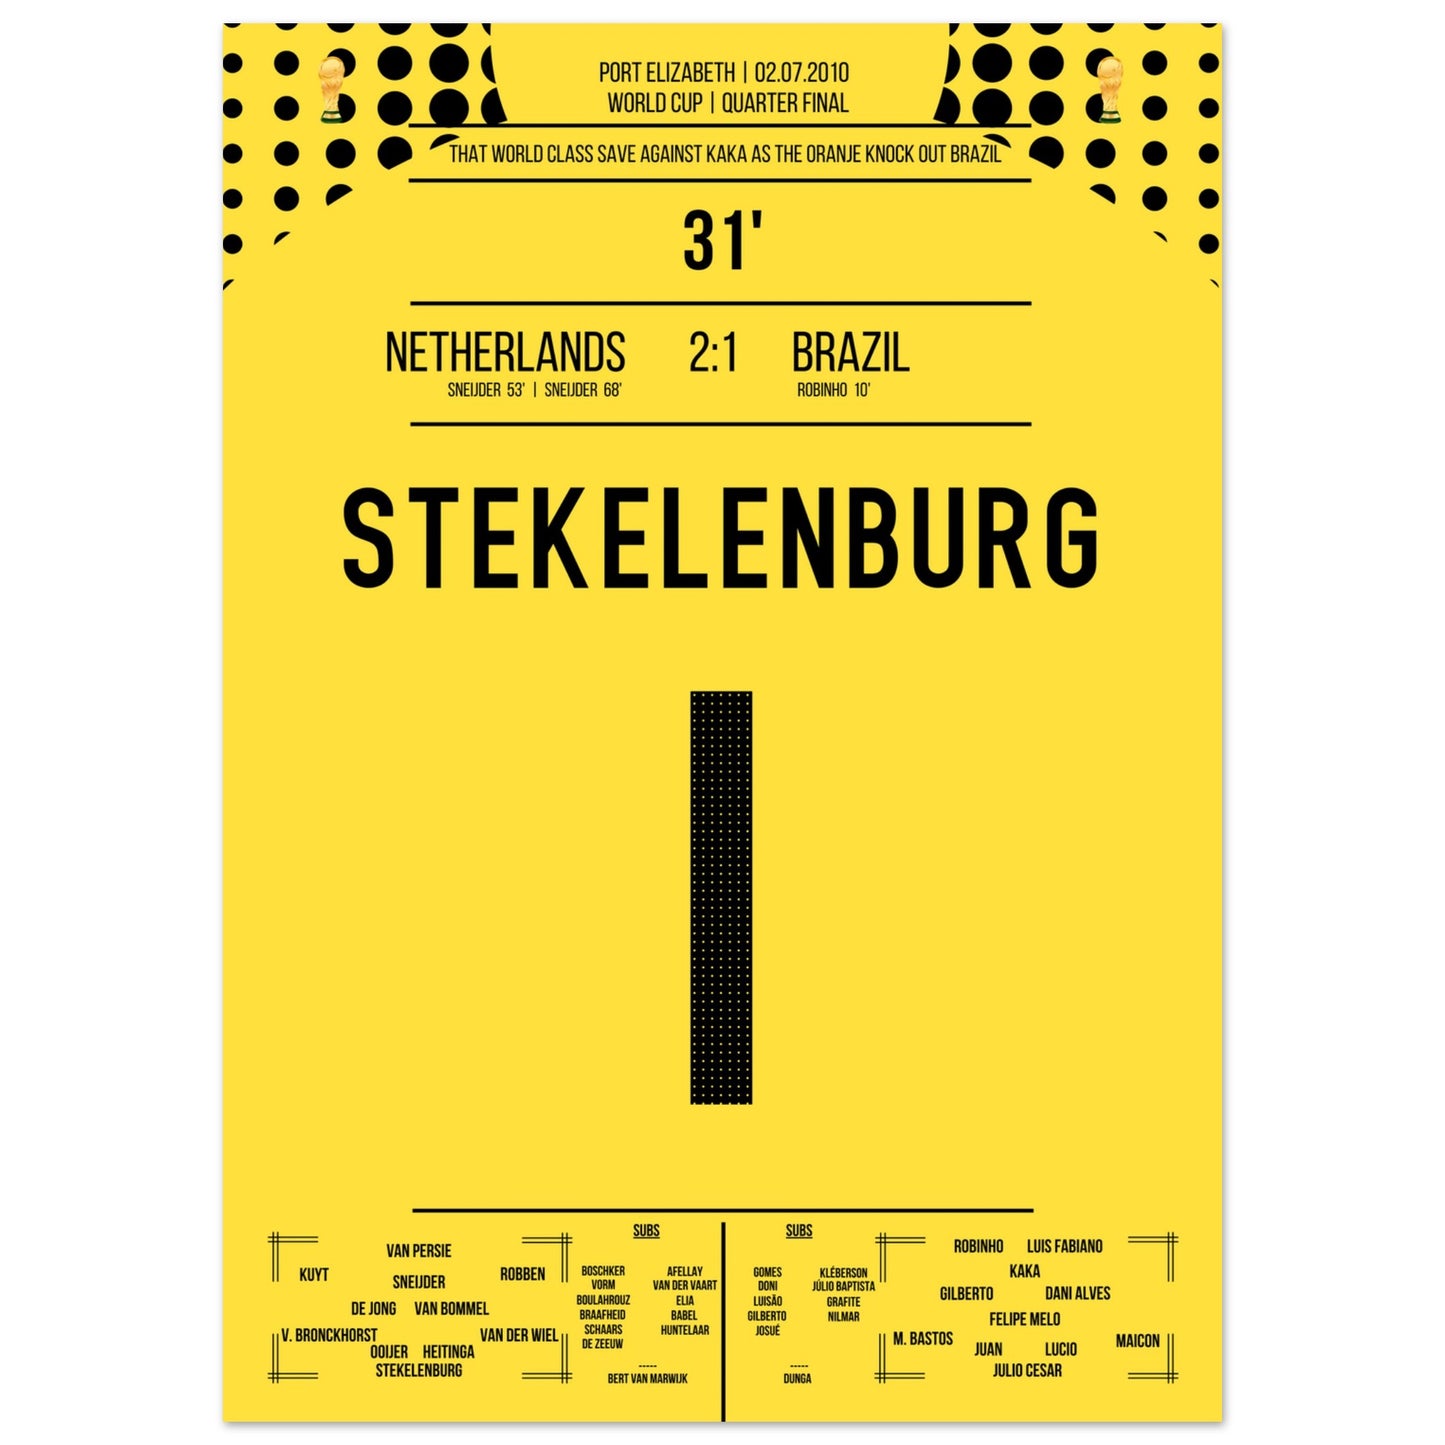 Stekelenburg's Weltklasse Aktion gegen Kaka bei der WM 2010 50x70-cm-20x28-Ohne-Rahmen